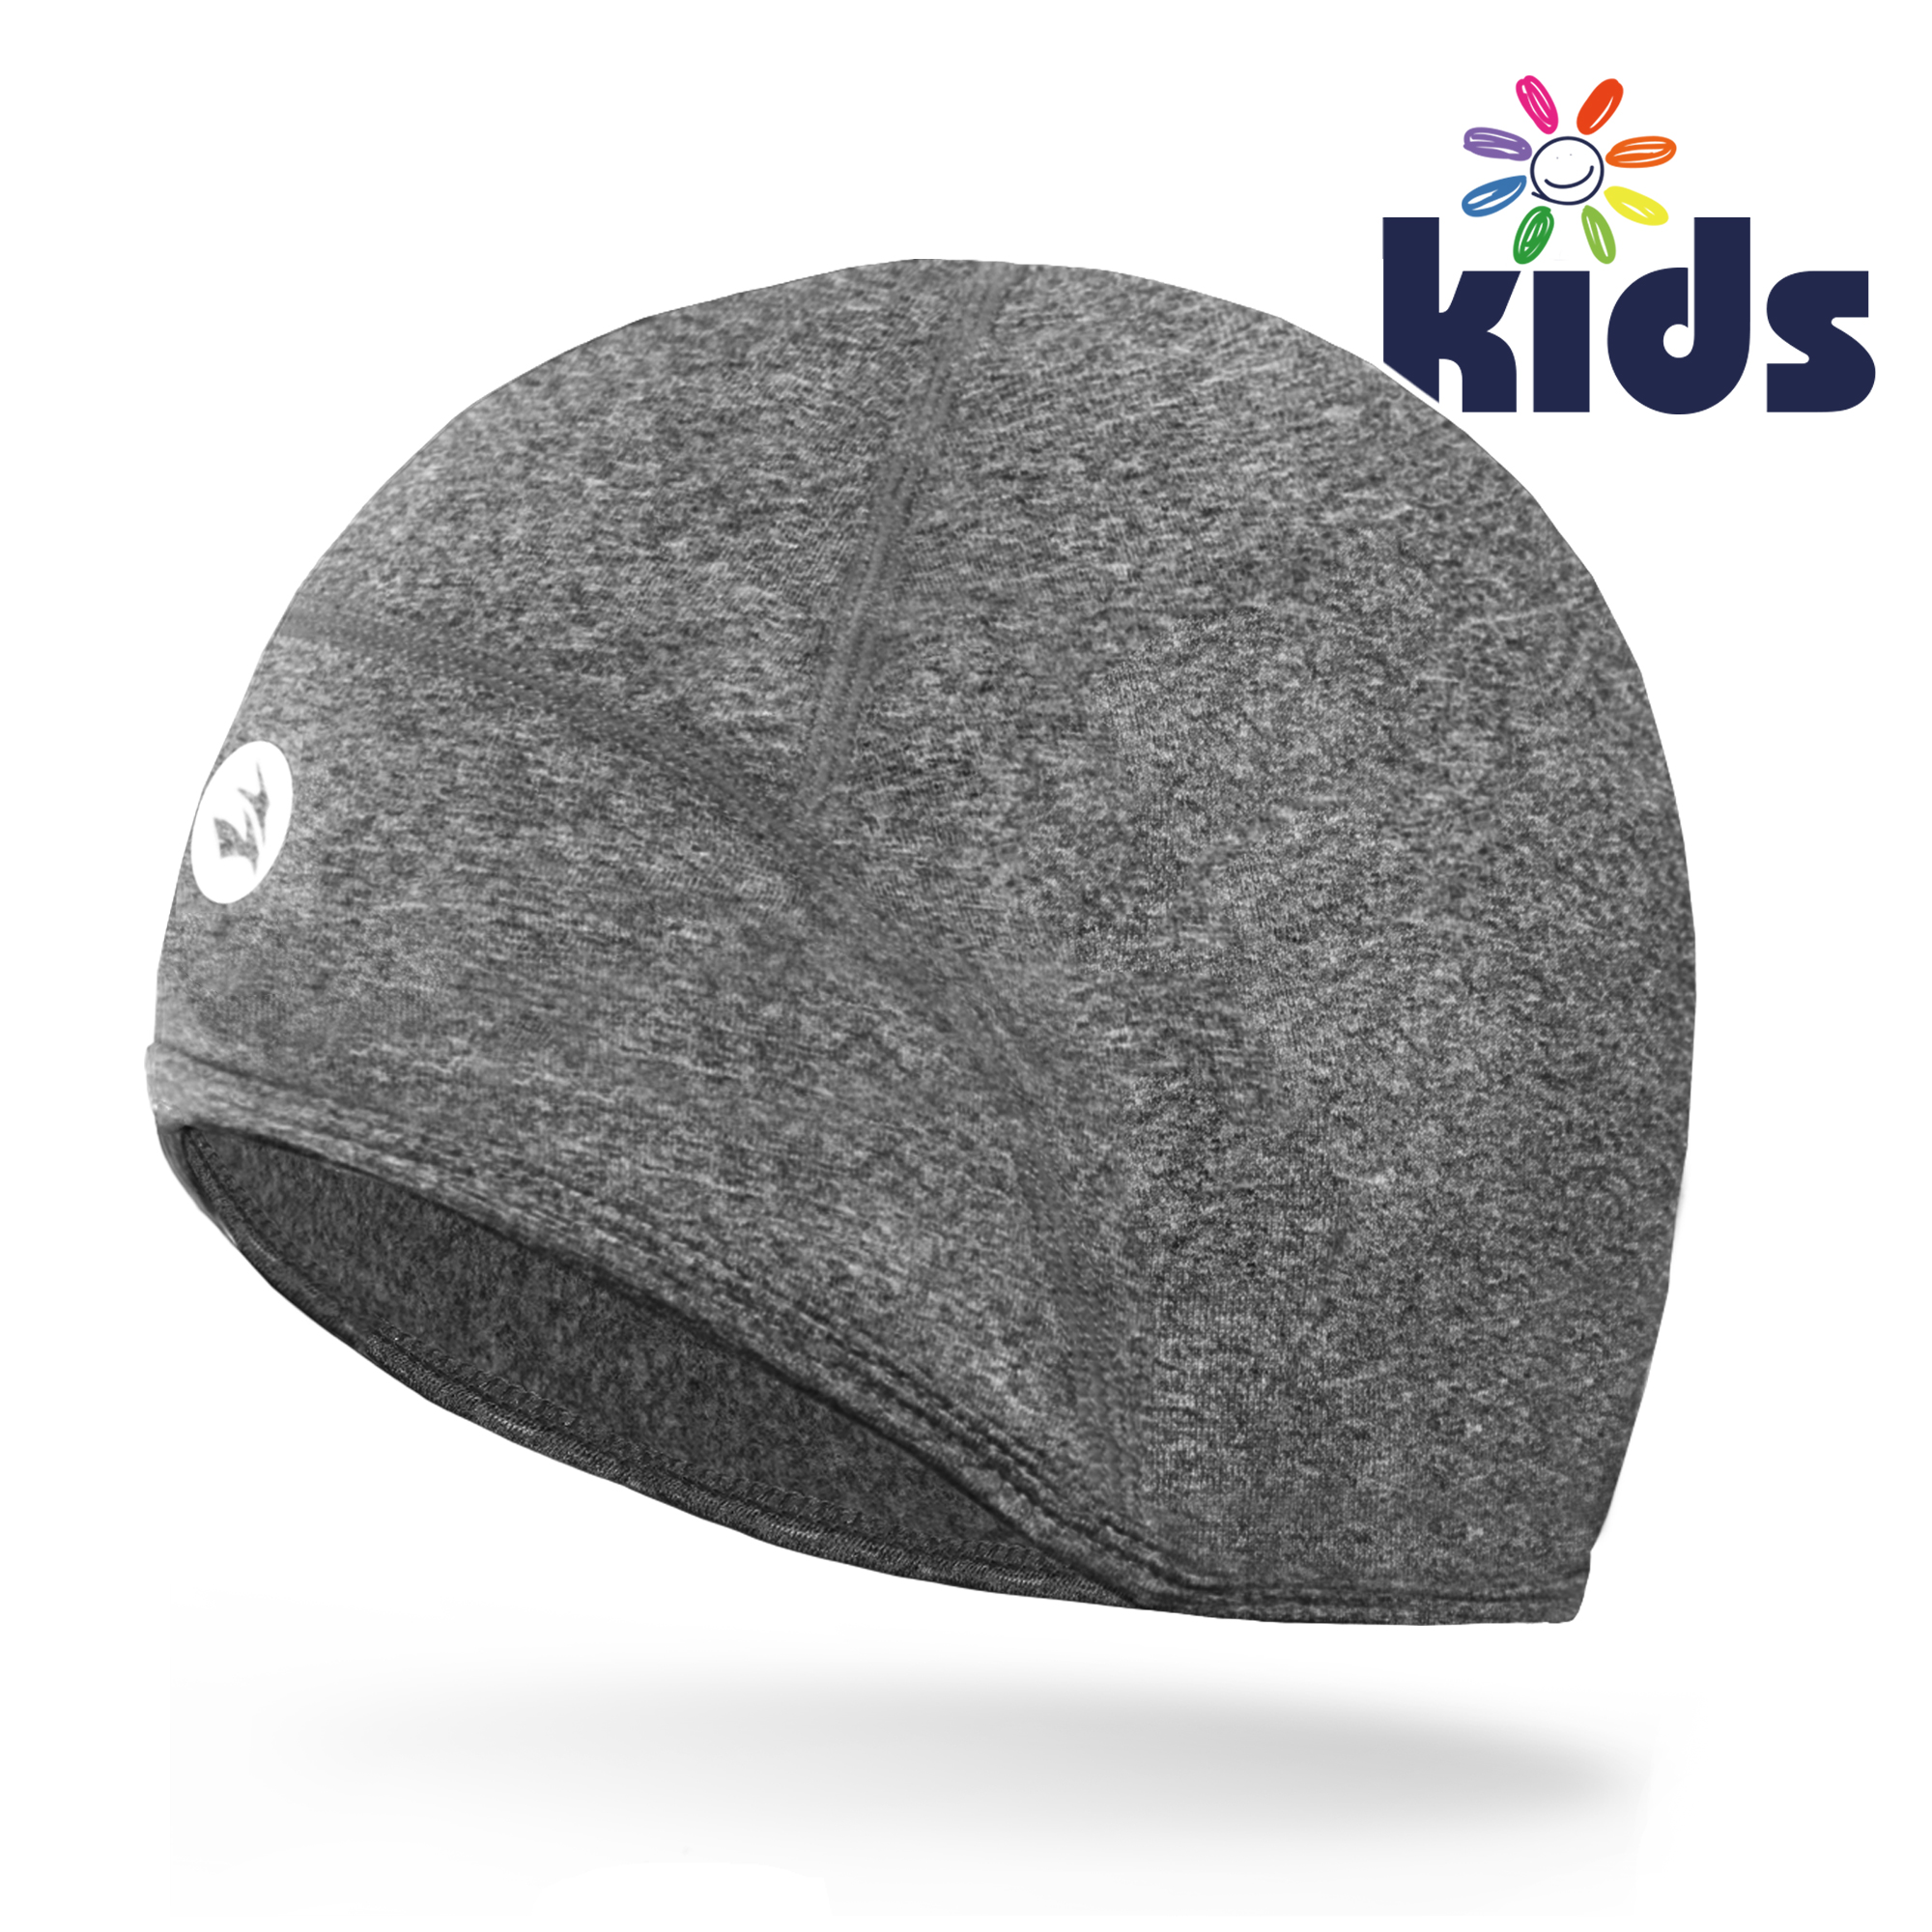 Kids Thermal Toddler Helmet Liner Lightweight Teens Thin Skull Caps Cover Ears Beanie Children Running Hats for Boy & Girl